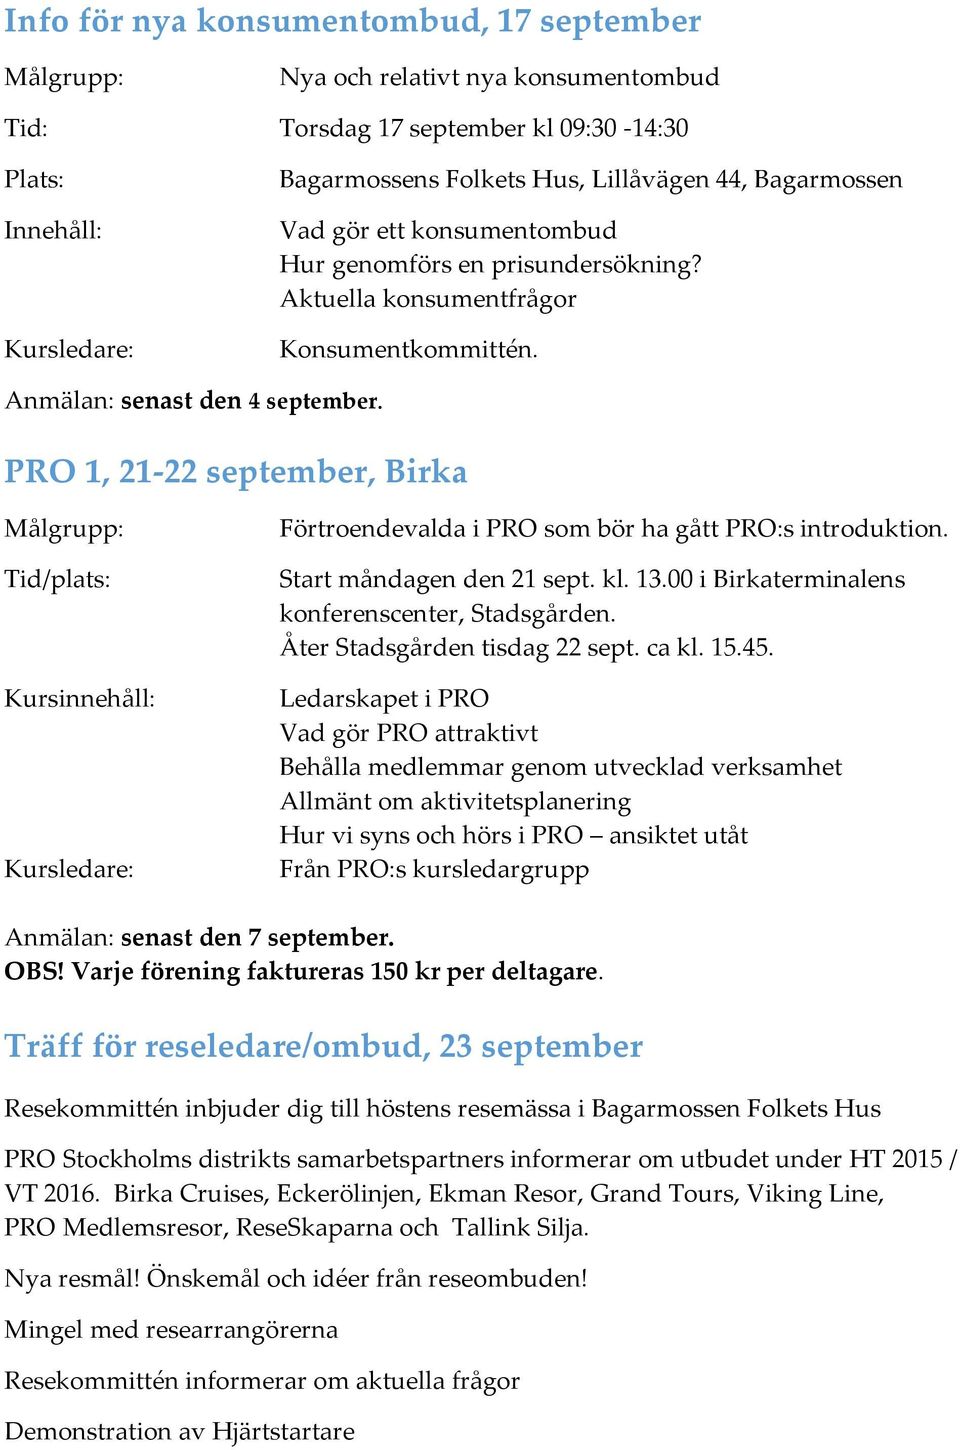 PRO 1, 21-22 september, Birka Tid/plats: Förtroendevalda i PRO som bör ha gått PRO:s introduktion. Start måndagen den 21 sept. kl. 13.00 i Birkaterminalens konferenscenter, Stadsgården.